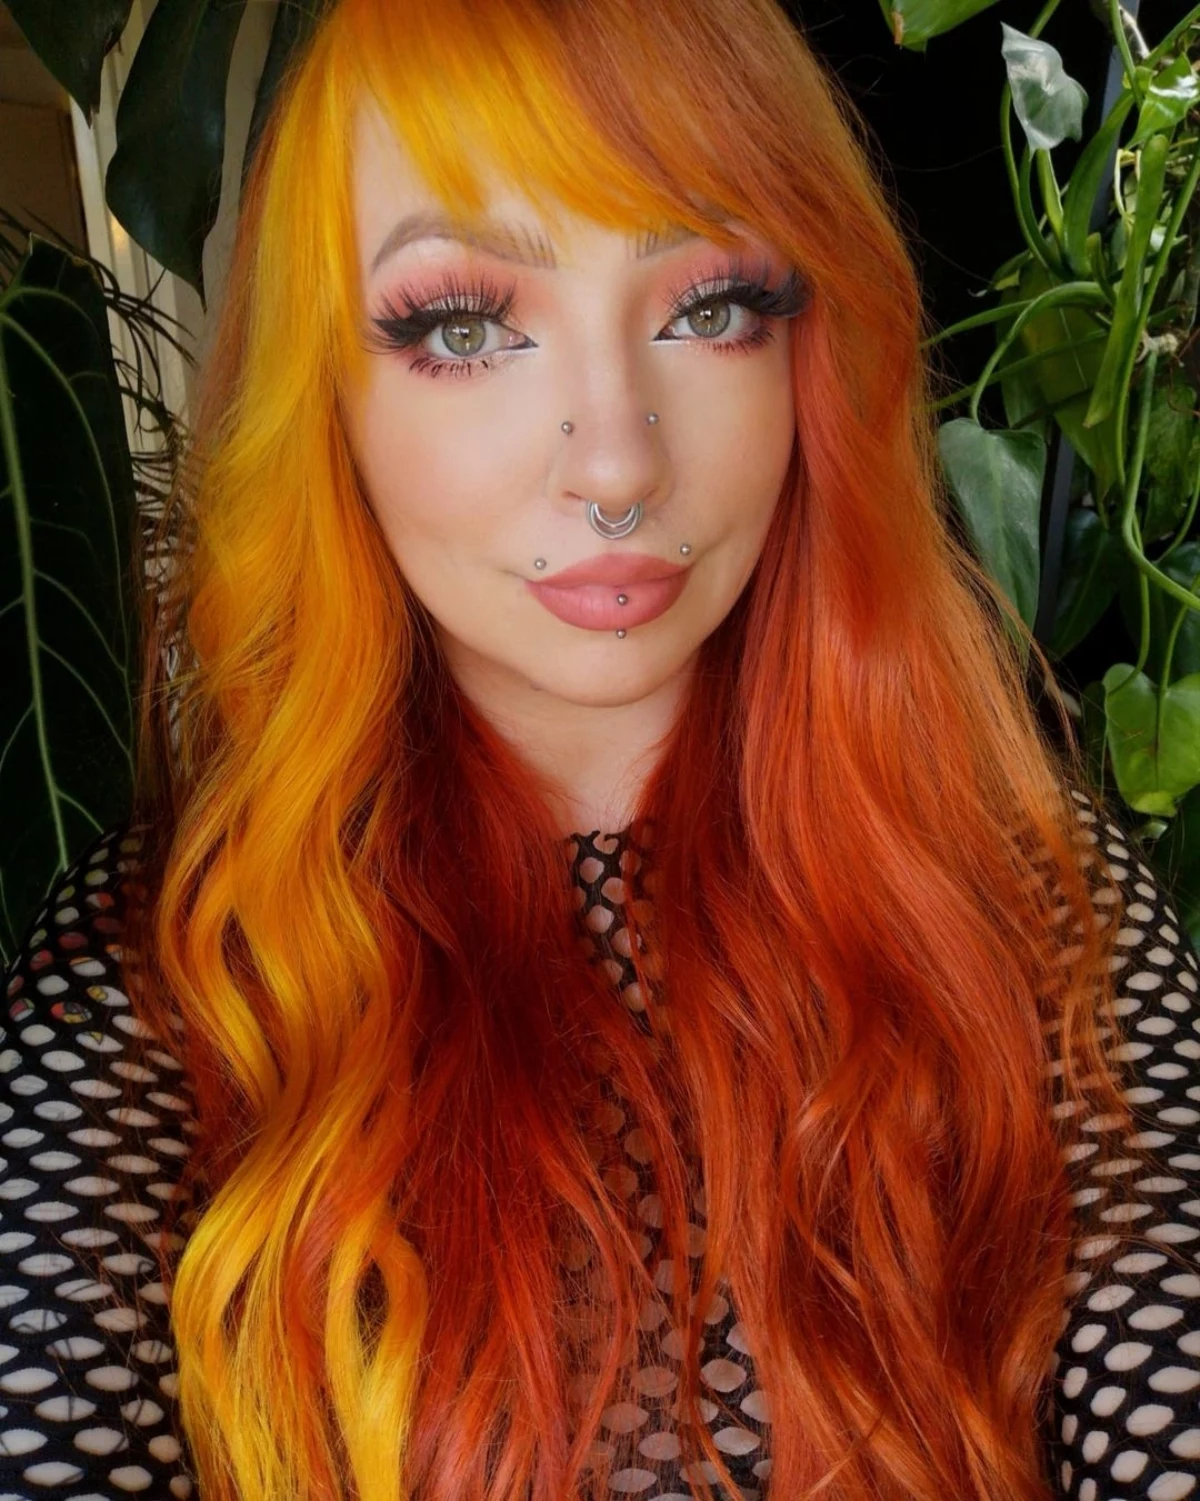 1 angel bites piercings woman with red orange hair